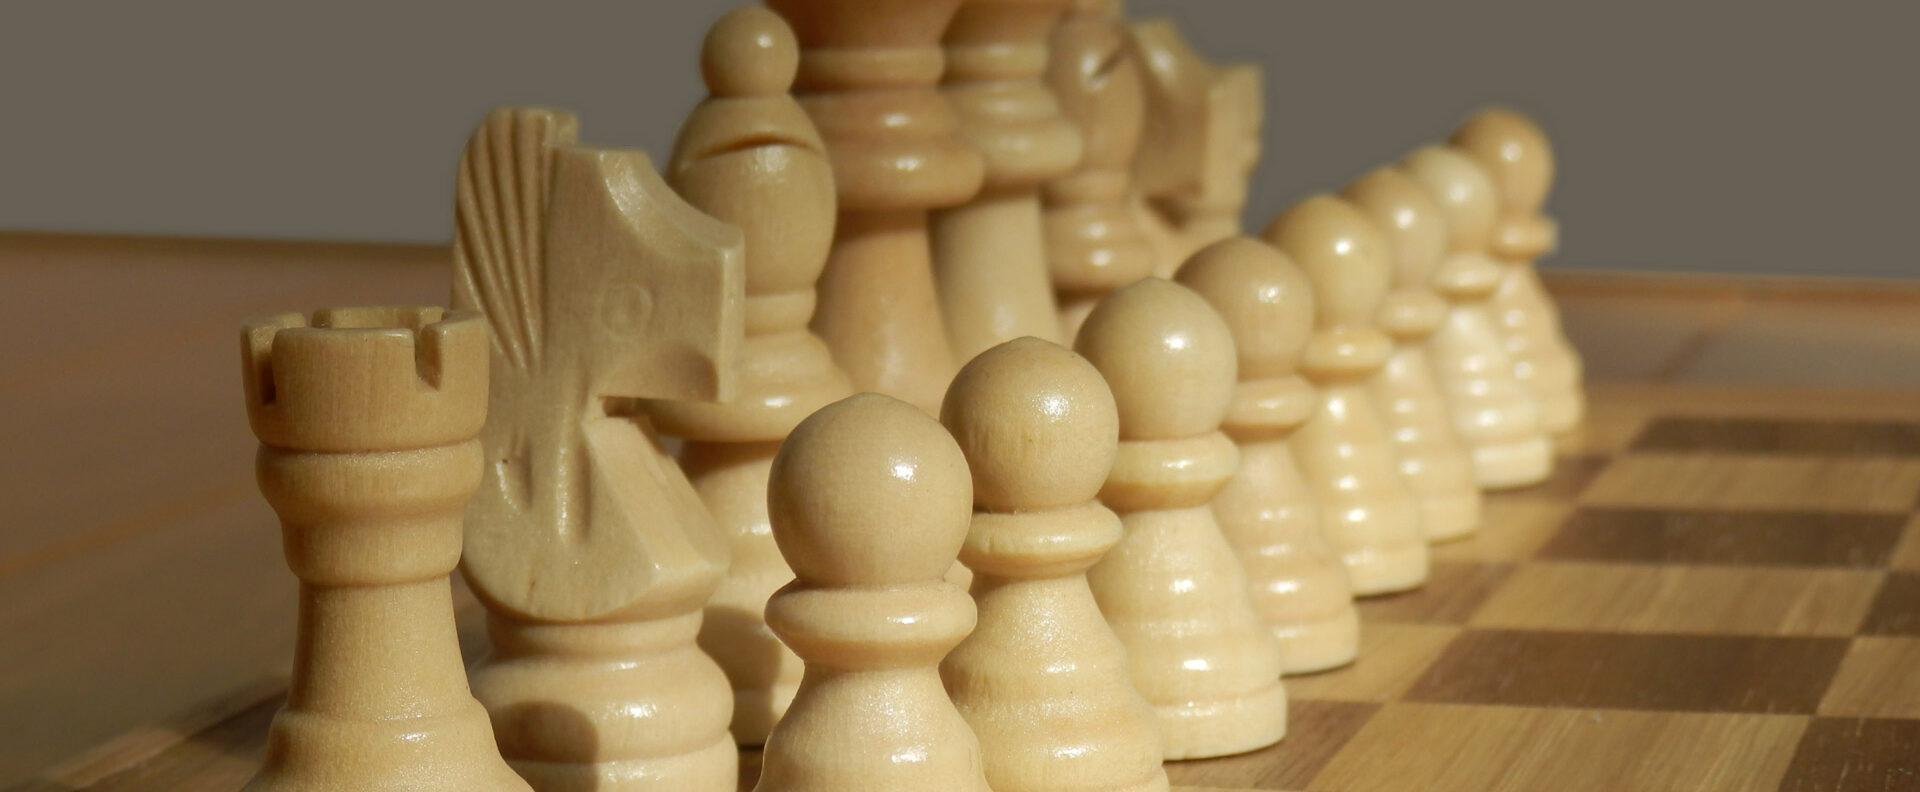 Ver categoría de ajedrez de madera